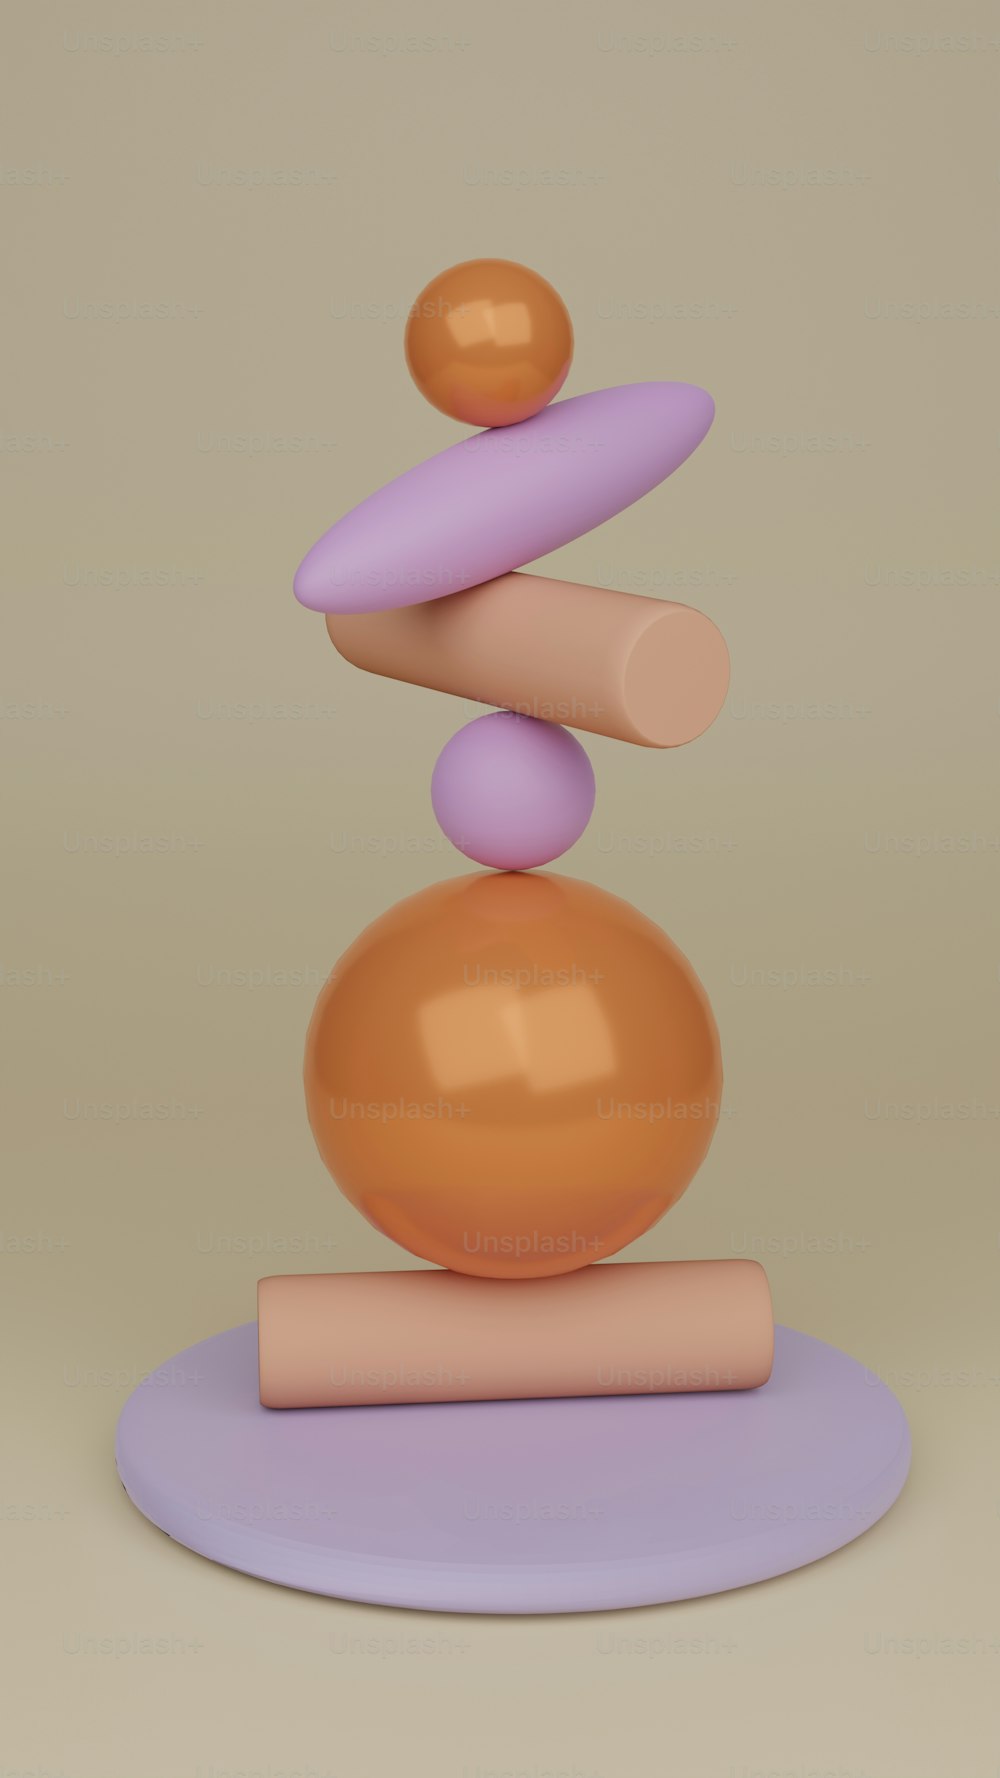 una escultura de una pila de bolas una encima de la otra